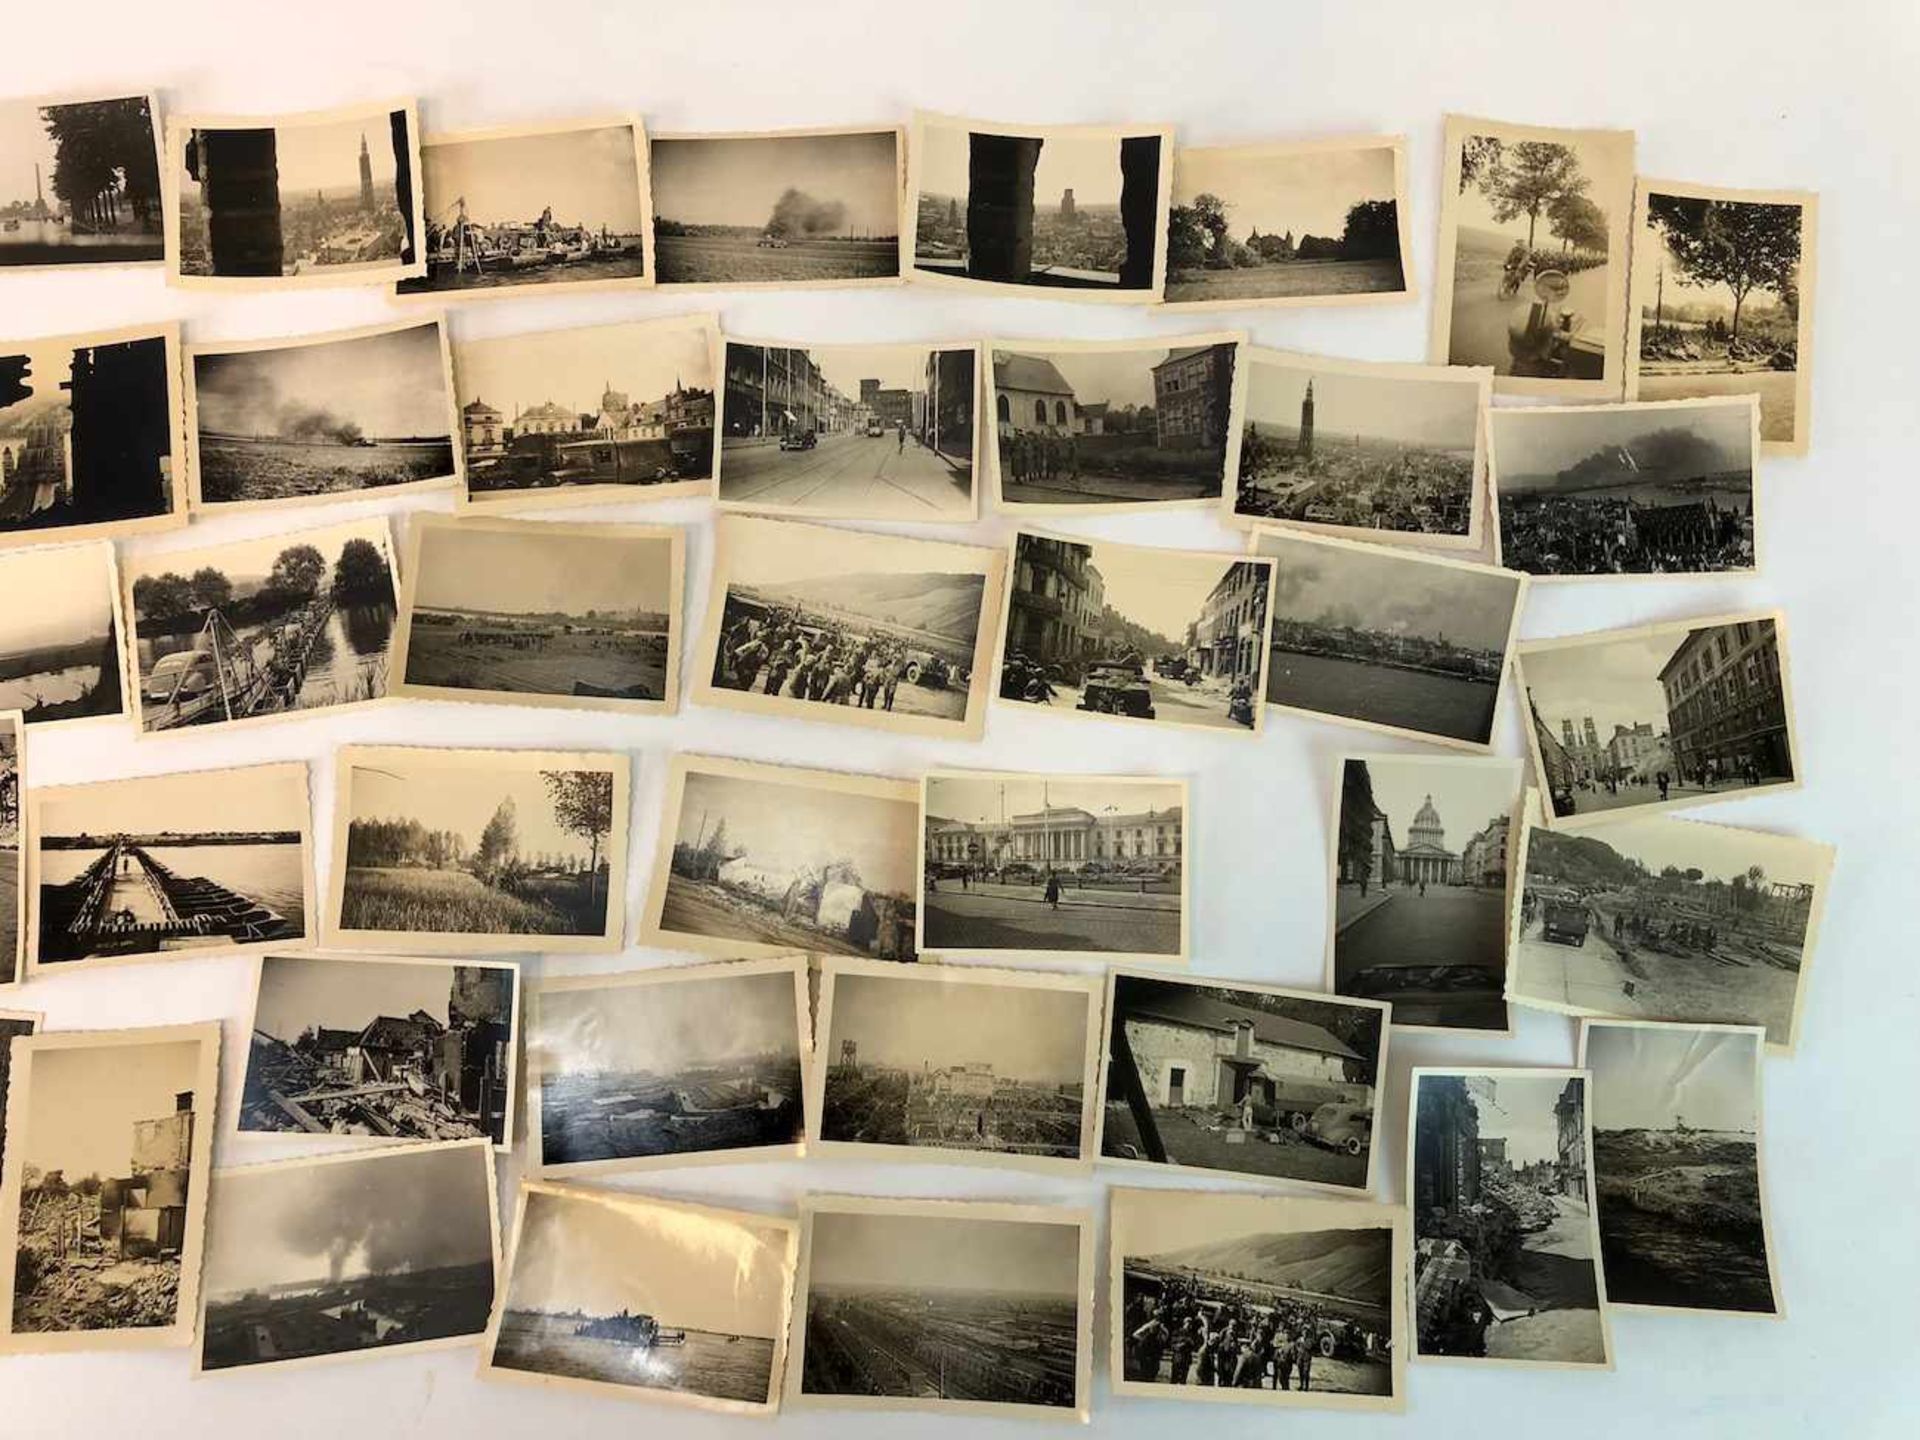 Dt. Feldwebel (Stalingradkämpfer) der Wehrmacht: 400 Fotografien, 1941/42. Frankreich, Belgien, - Bild 12 aus 13